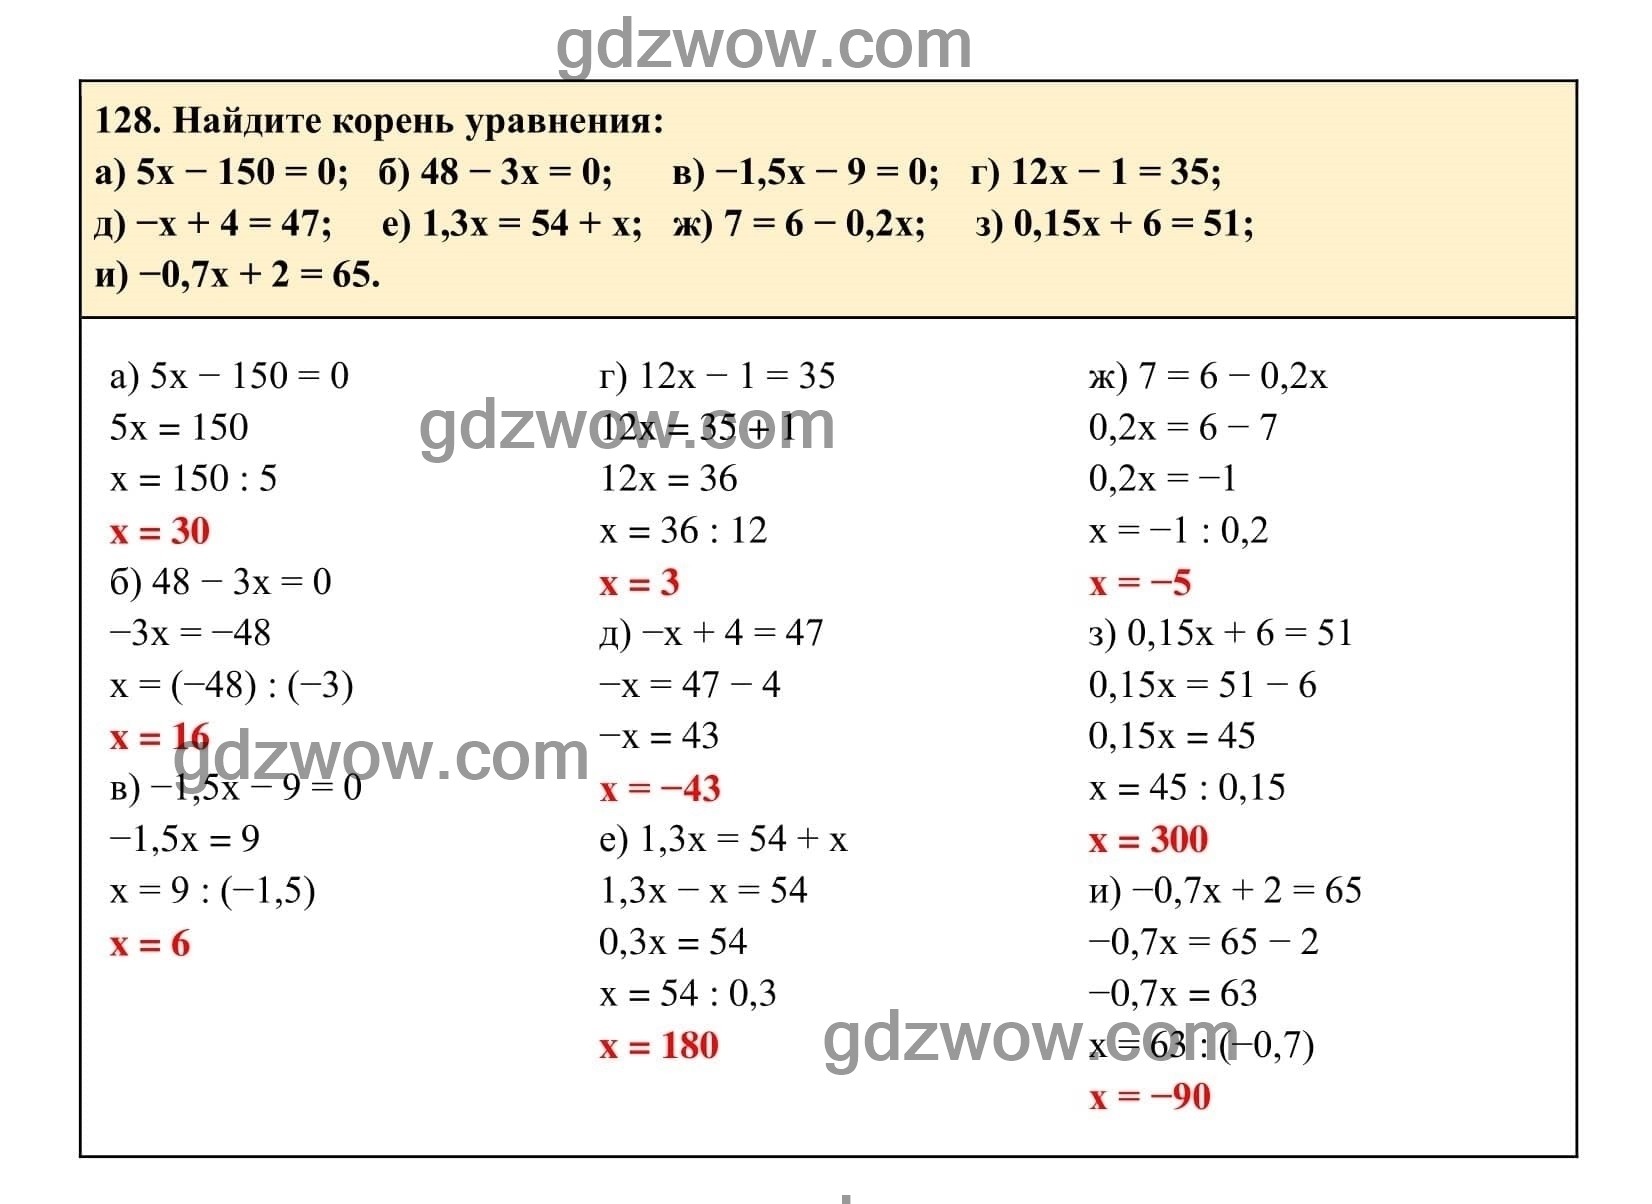 Упражнение 128 - ГДЗ по Алгебре 7 класс Учебник Макарычев (решебник) - GDZwow